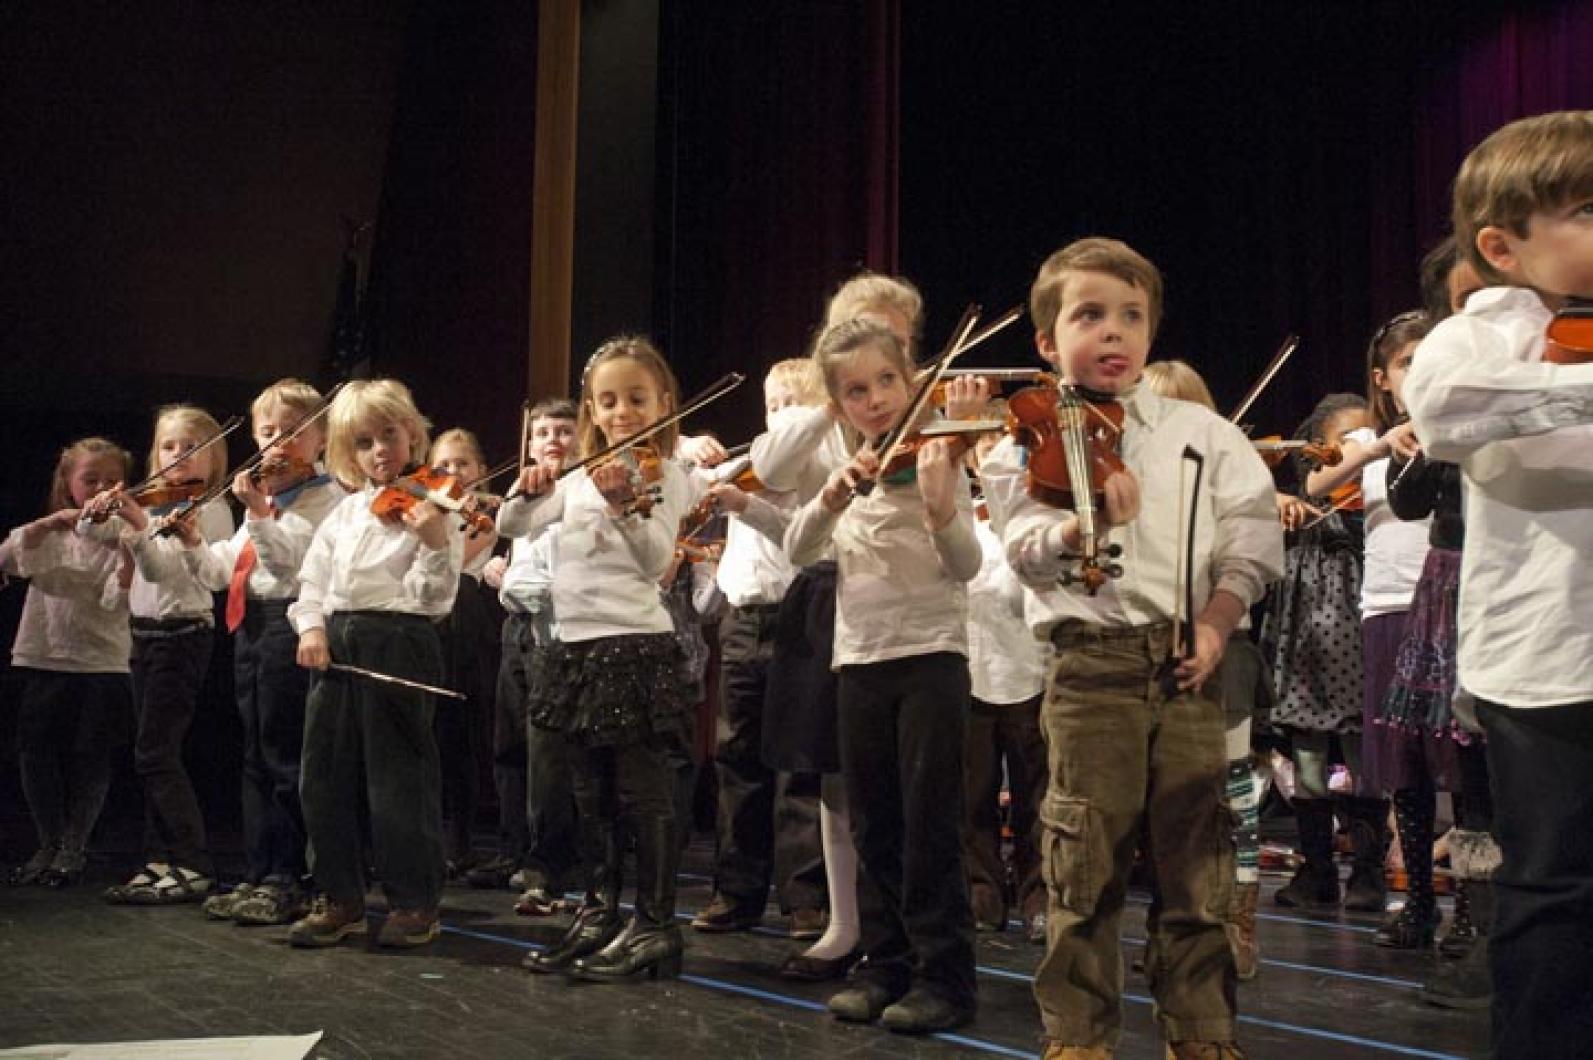 Violins concert kids musicians